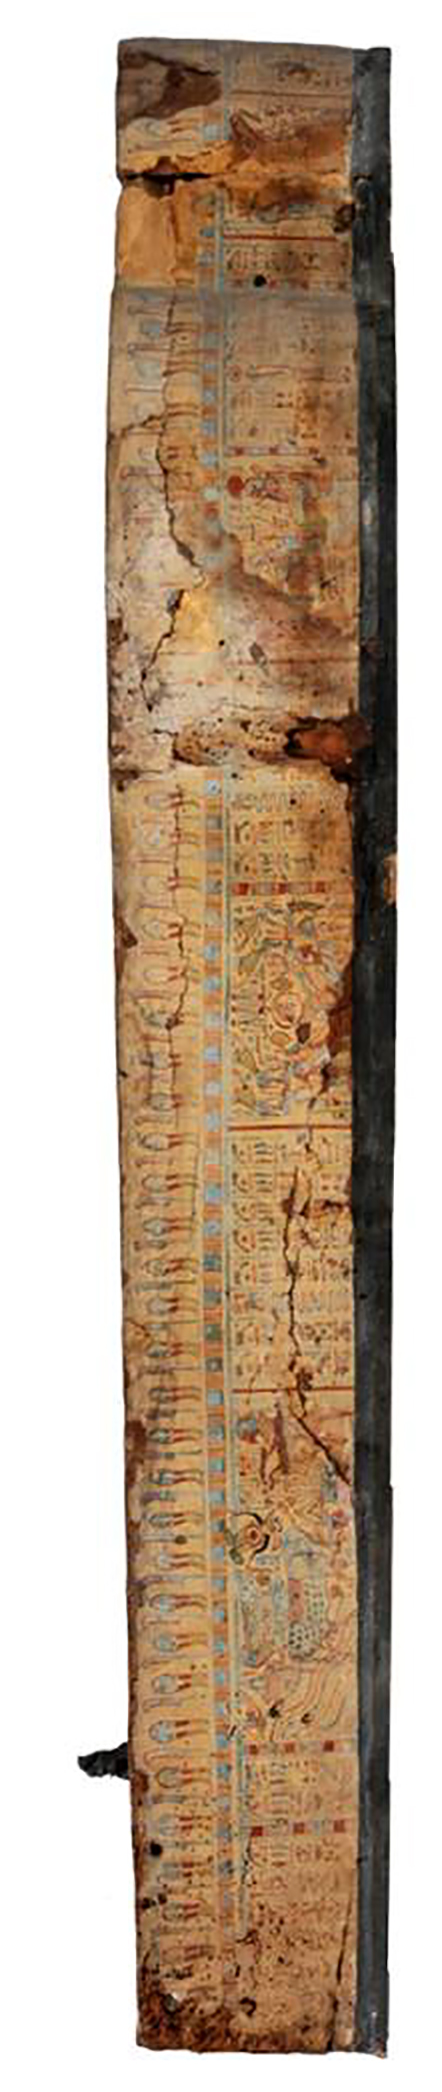 Alveo di sarcofago interno del tipo 'giallo' (sarcofago/ cassa) (SECOLI/ X a.C)